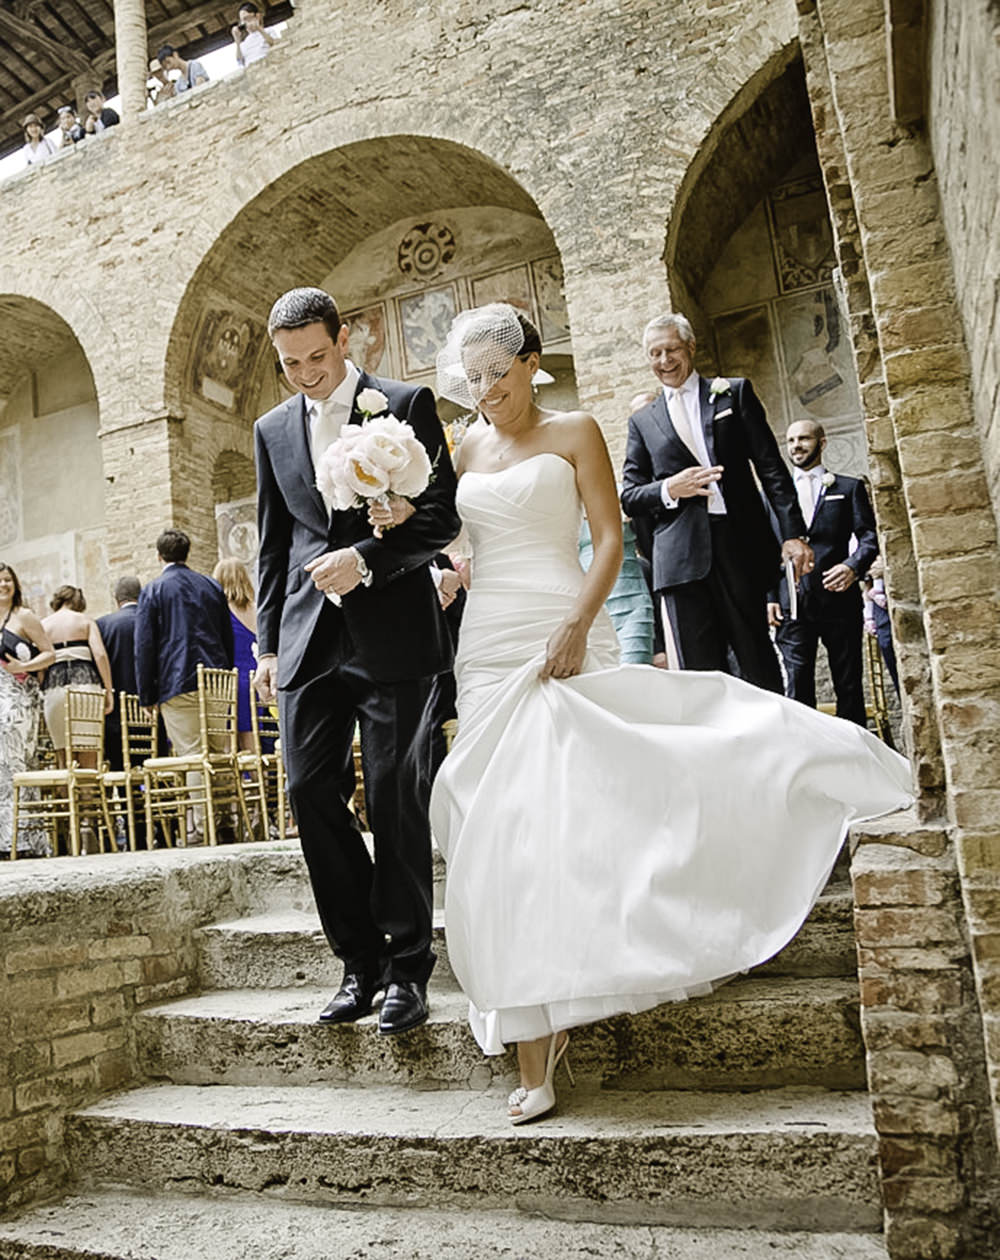 Civil weddings in Italy